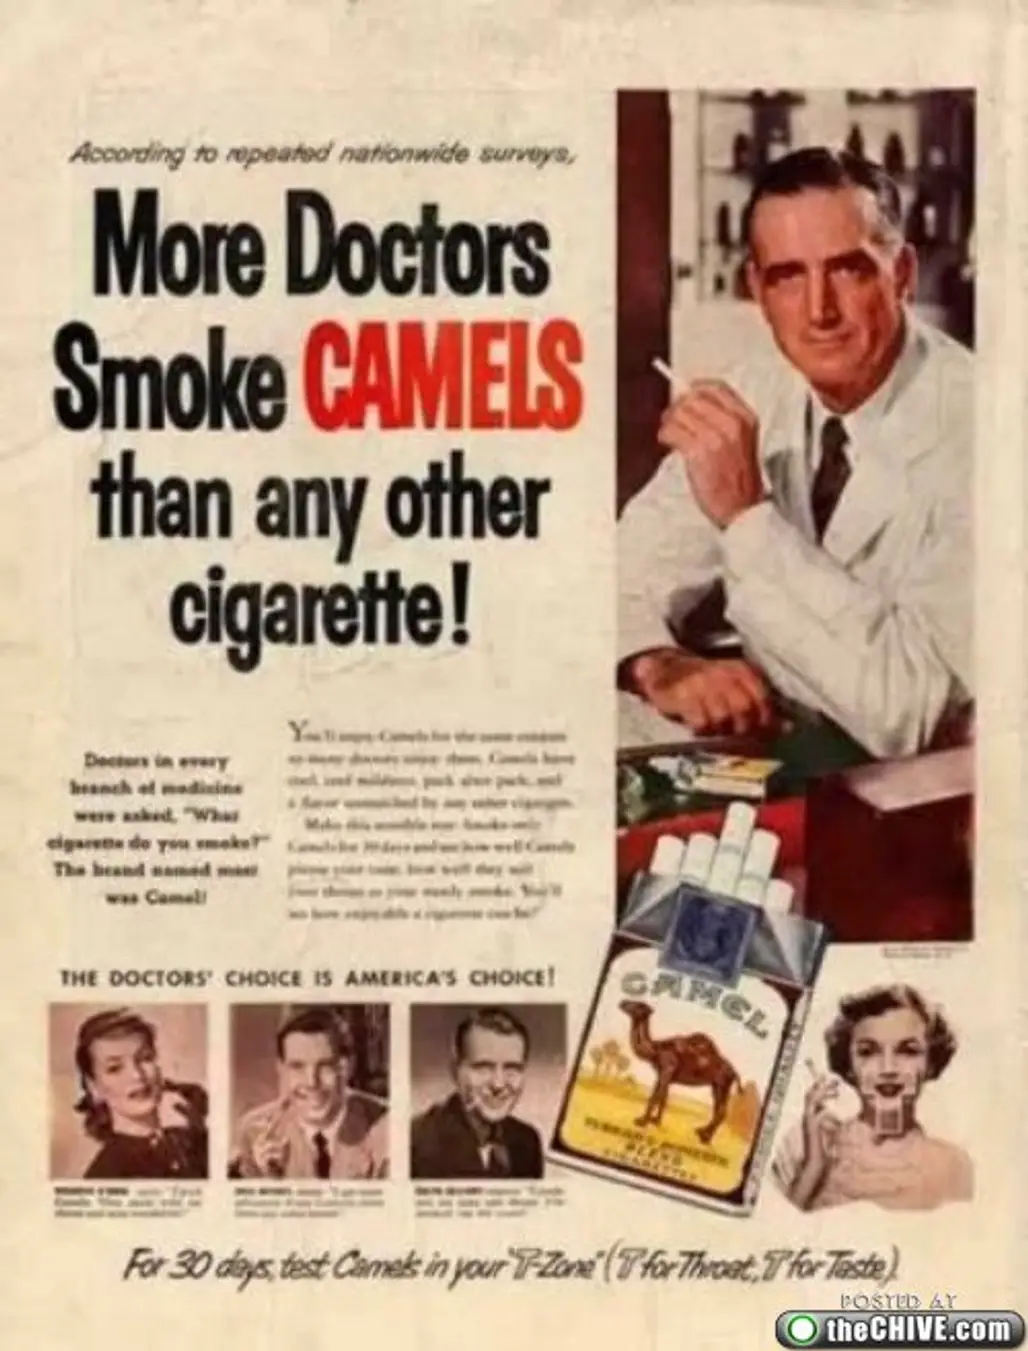 Camels for Doctors